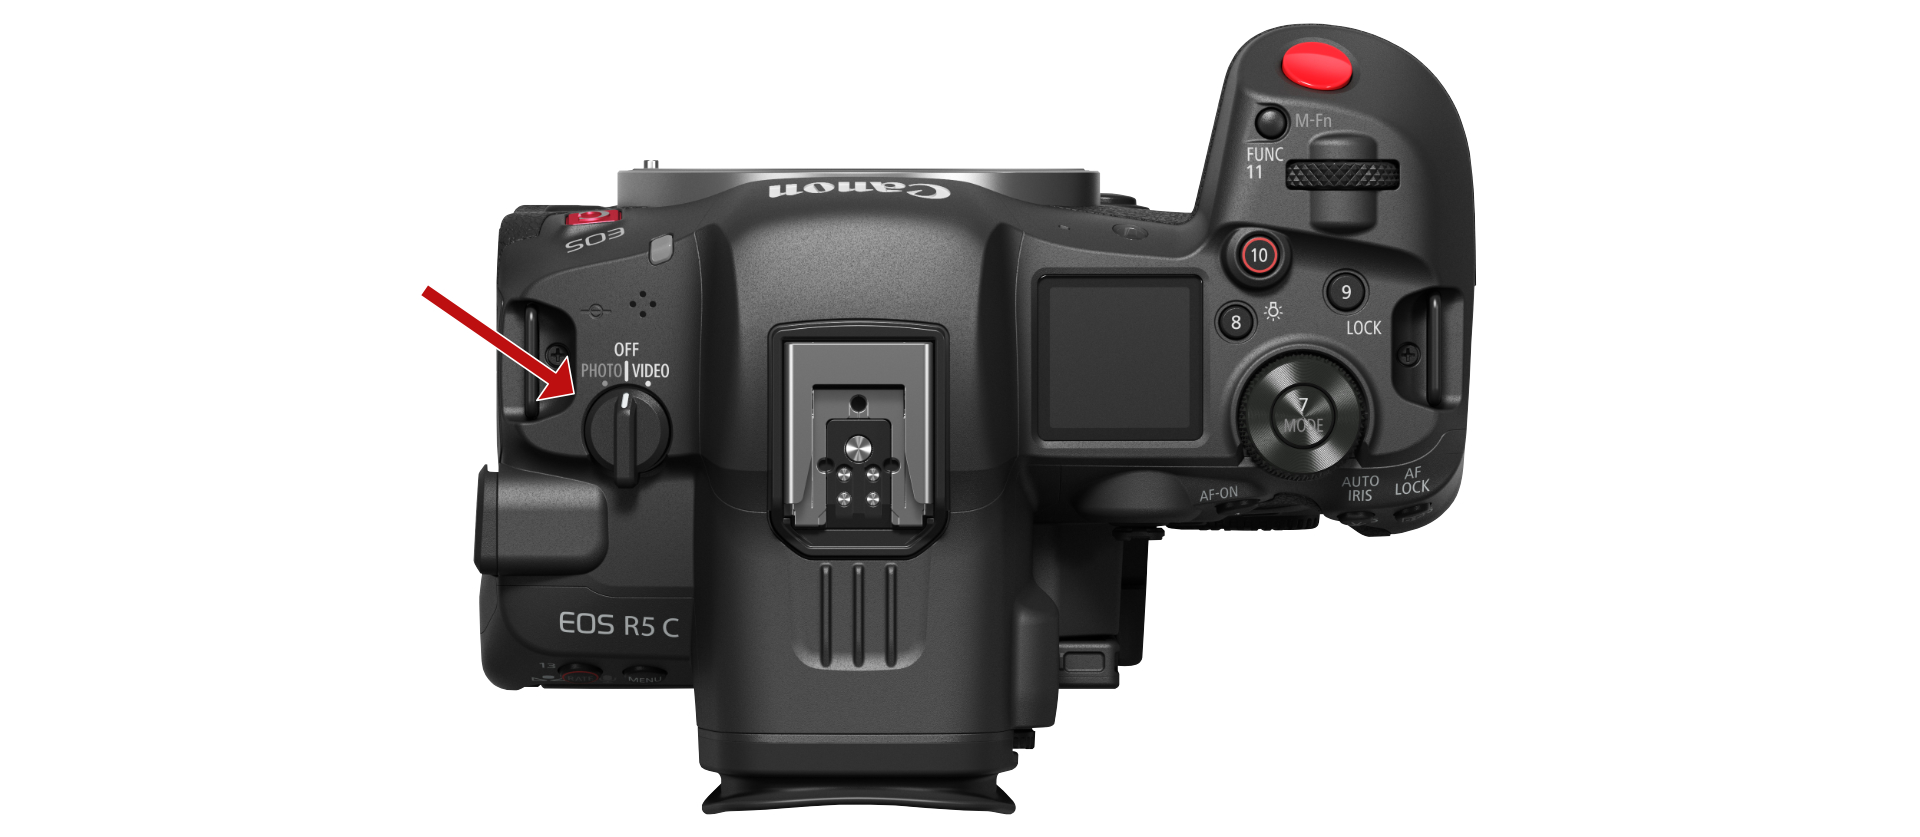 キヤノンが「EOS R5 C」を発売 | CineD